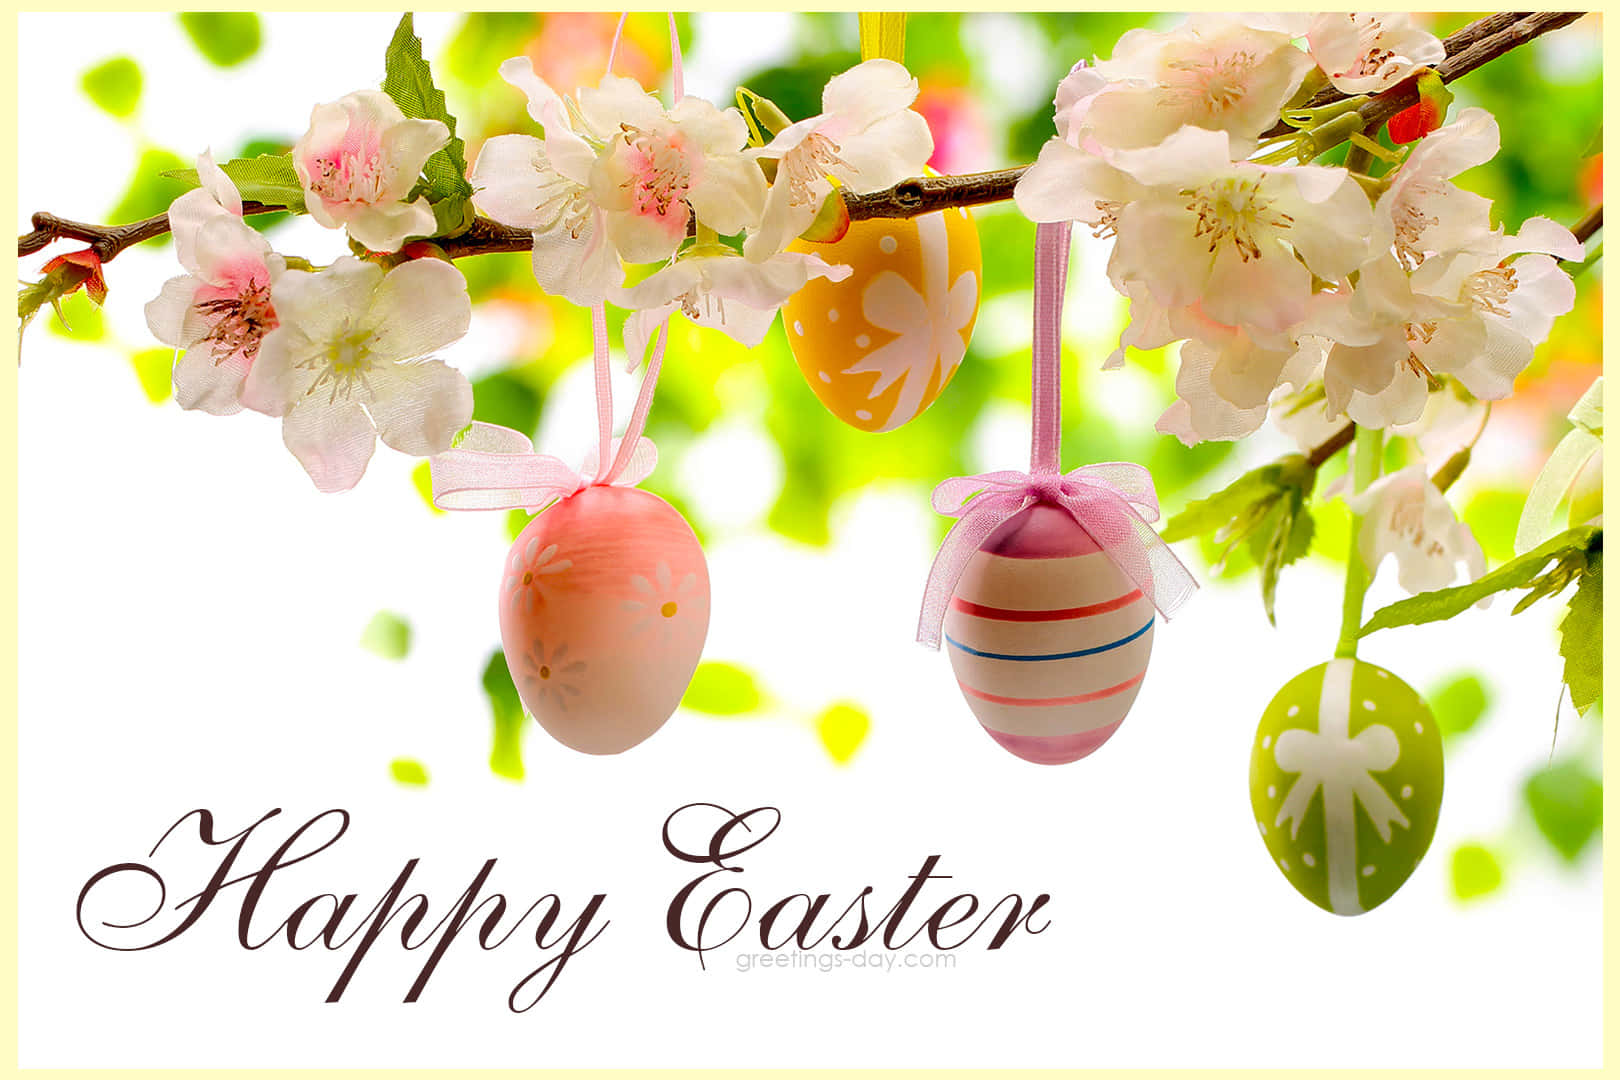 Feiernsie Ostern Mit Familie Und Freunden!